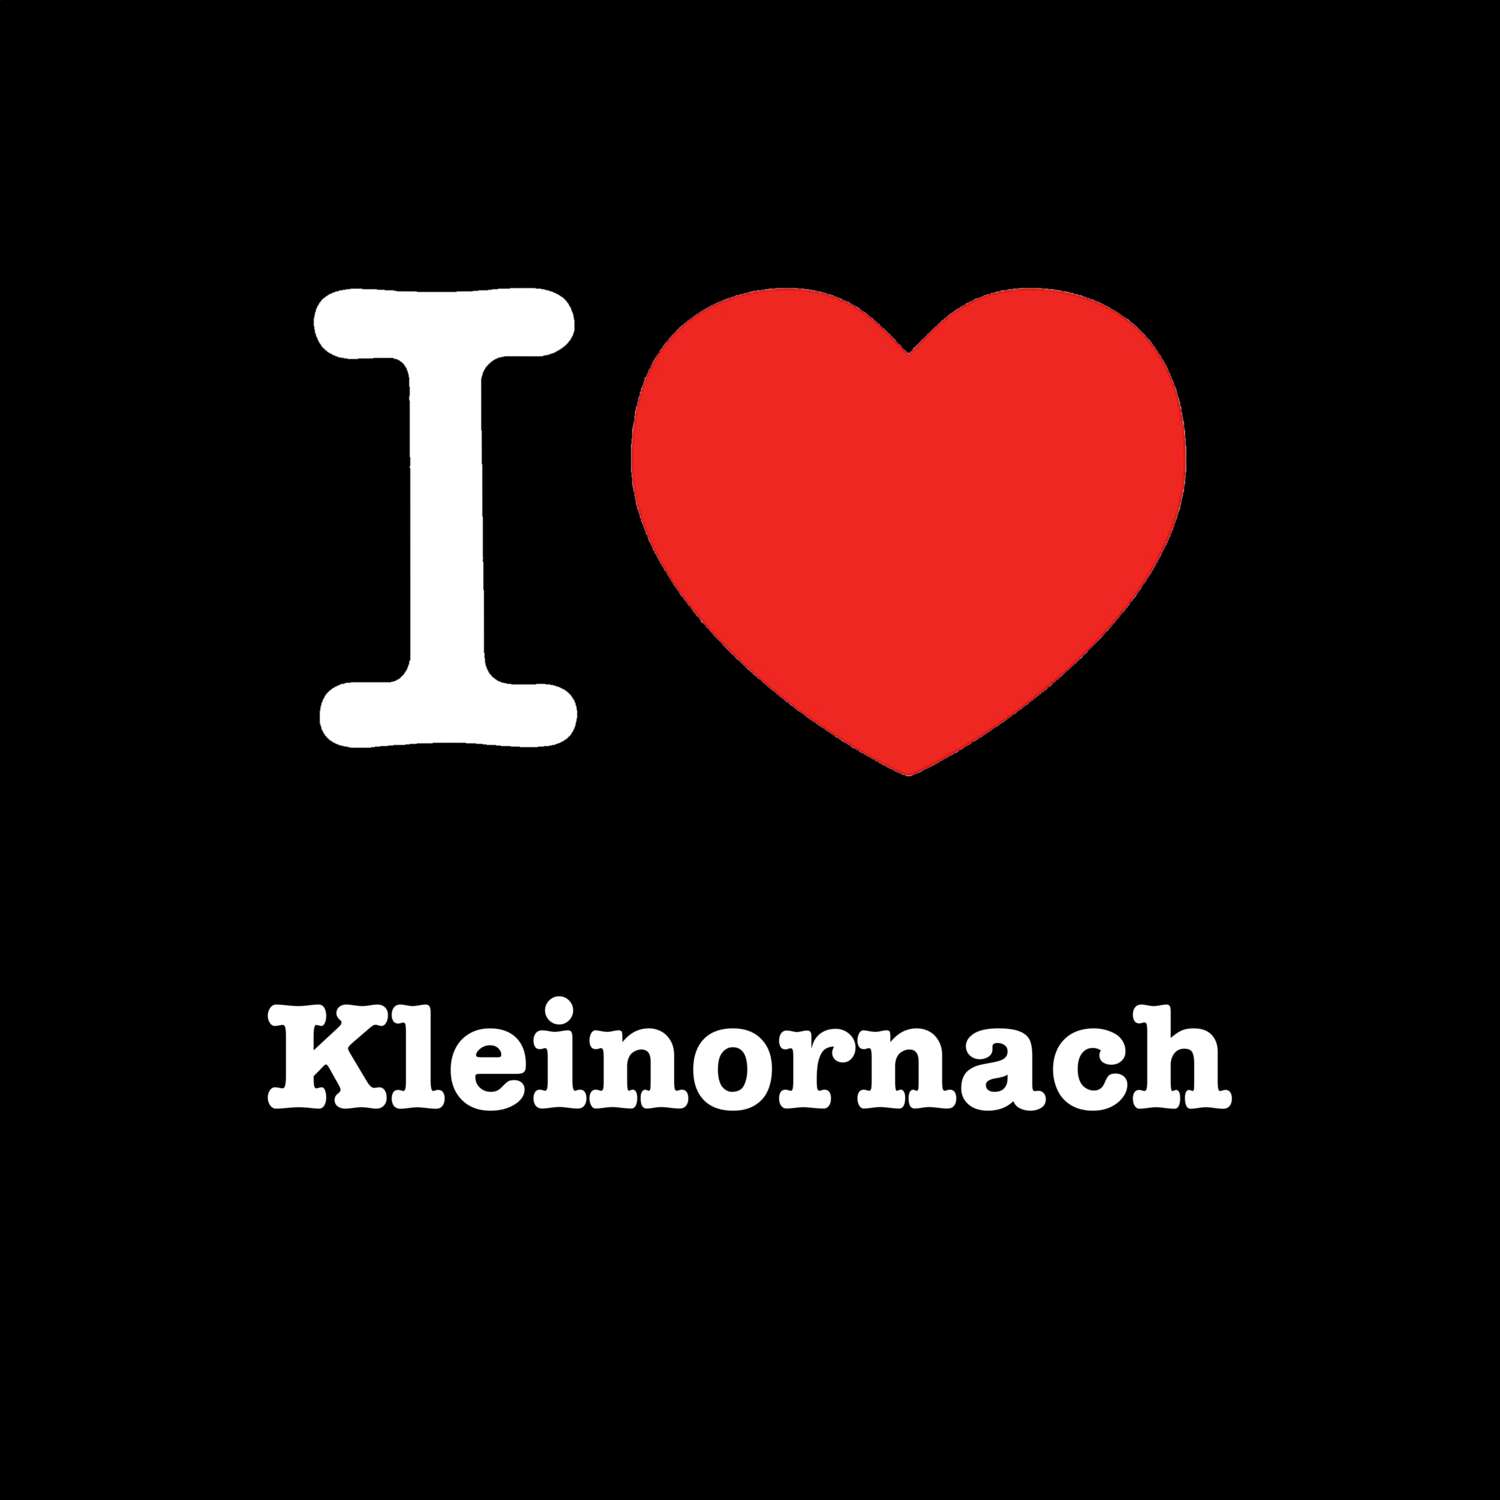 Kleinornach T-Shirt »I love«